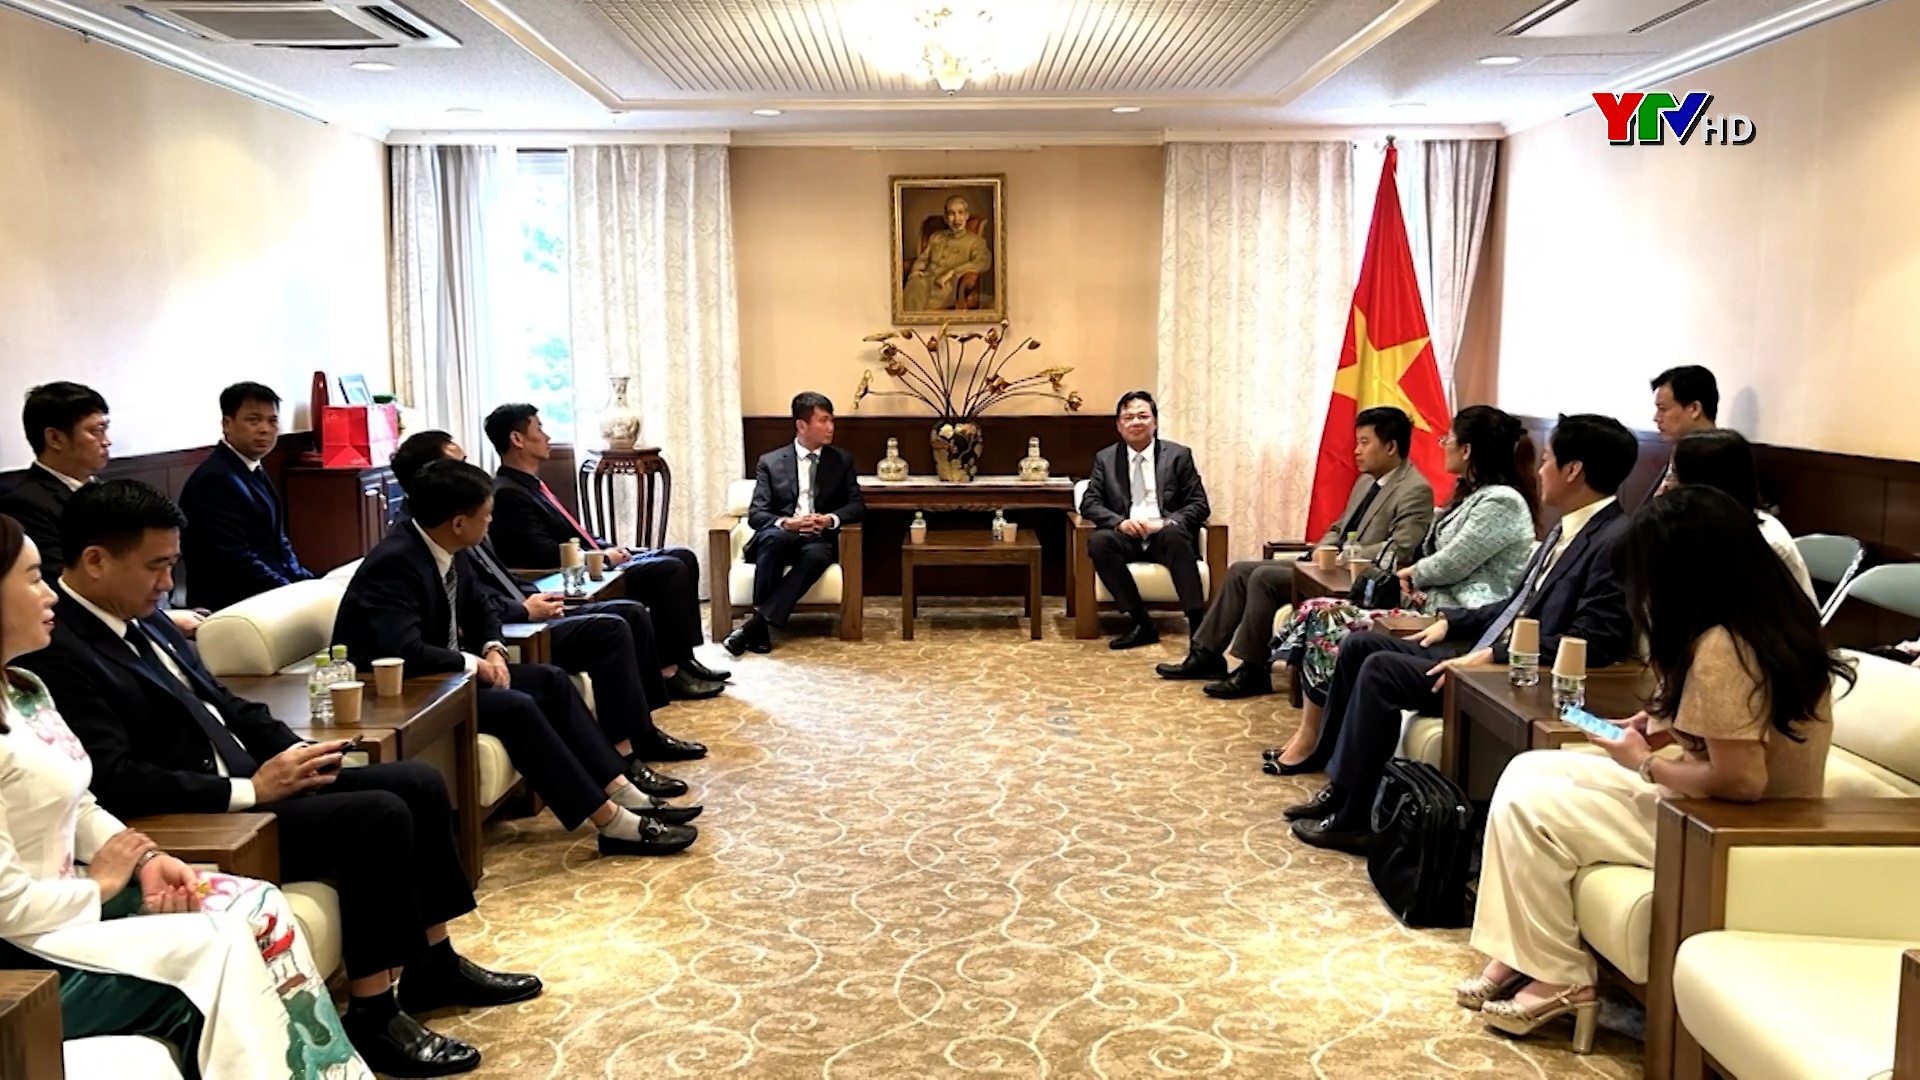 Đồng chí Chủ tịch UBND tỉnh Trần Huy Tuấn làm việc với Đại sứ quán Việt Nam tại Nhật Bản